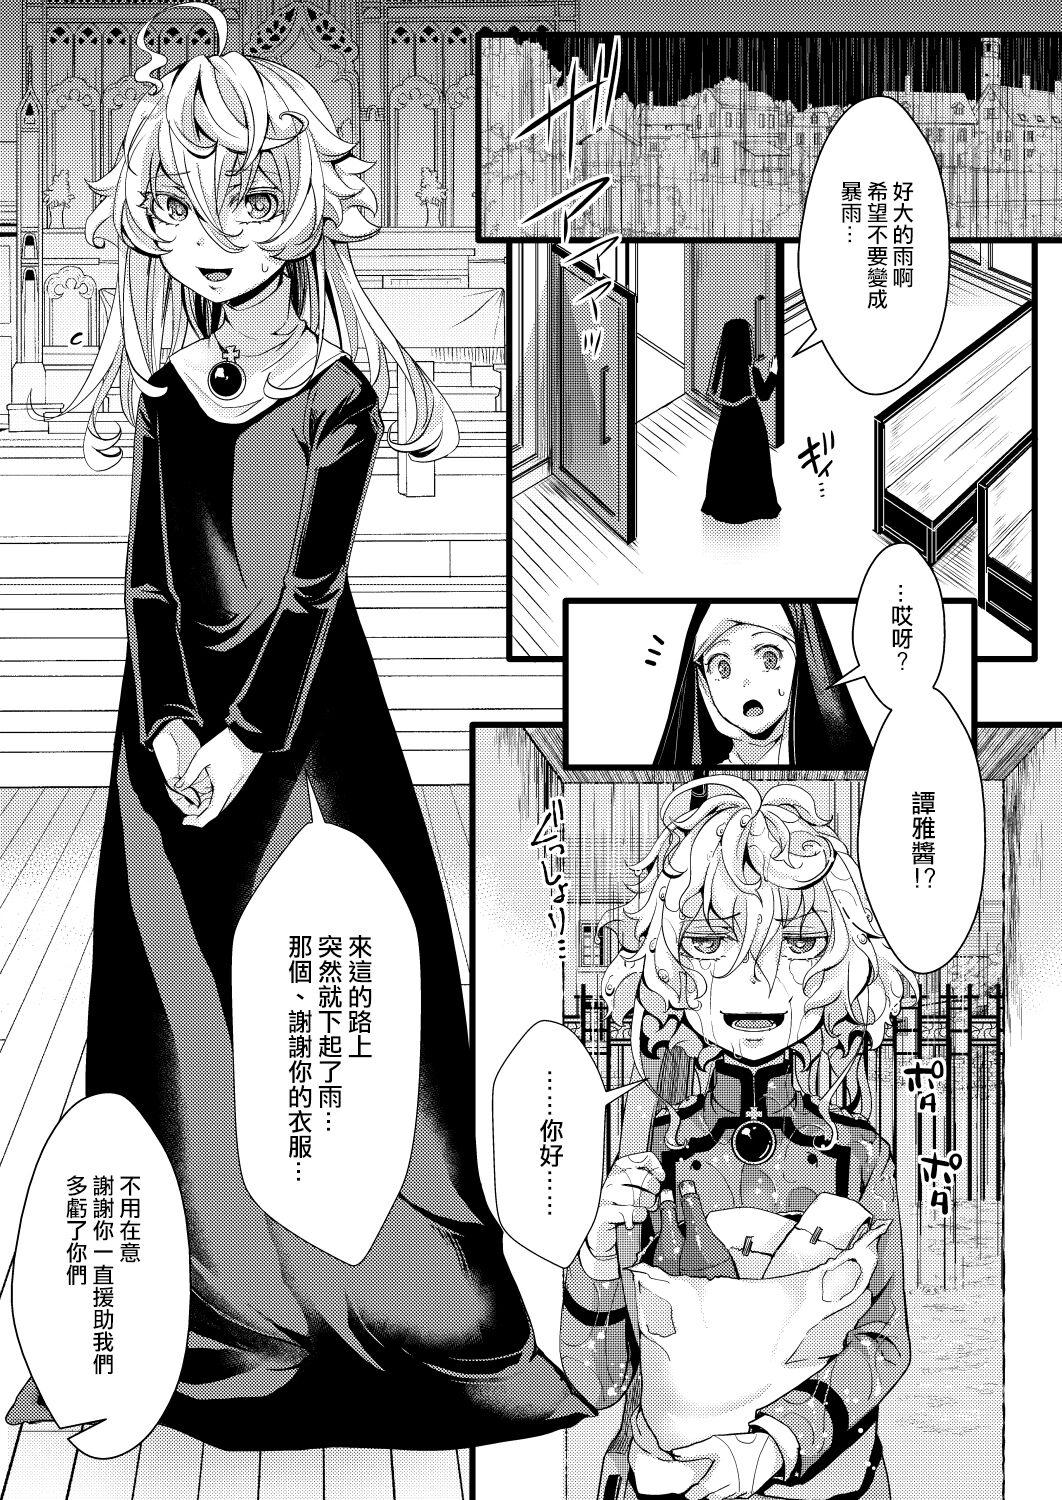 Gostoso Sister Fuku na Tanya-chan no Hanashi - Youjo senki | saga of tanya the evil Heels - Page 2